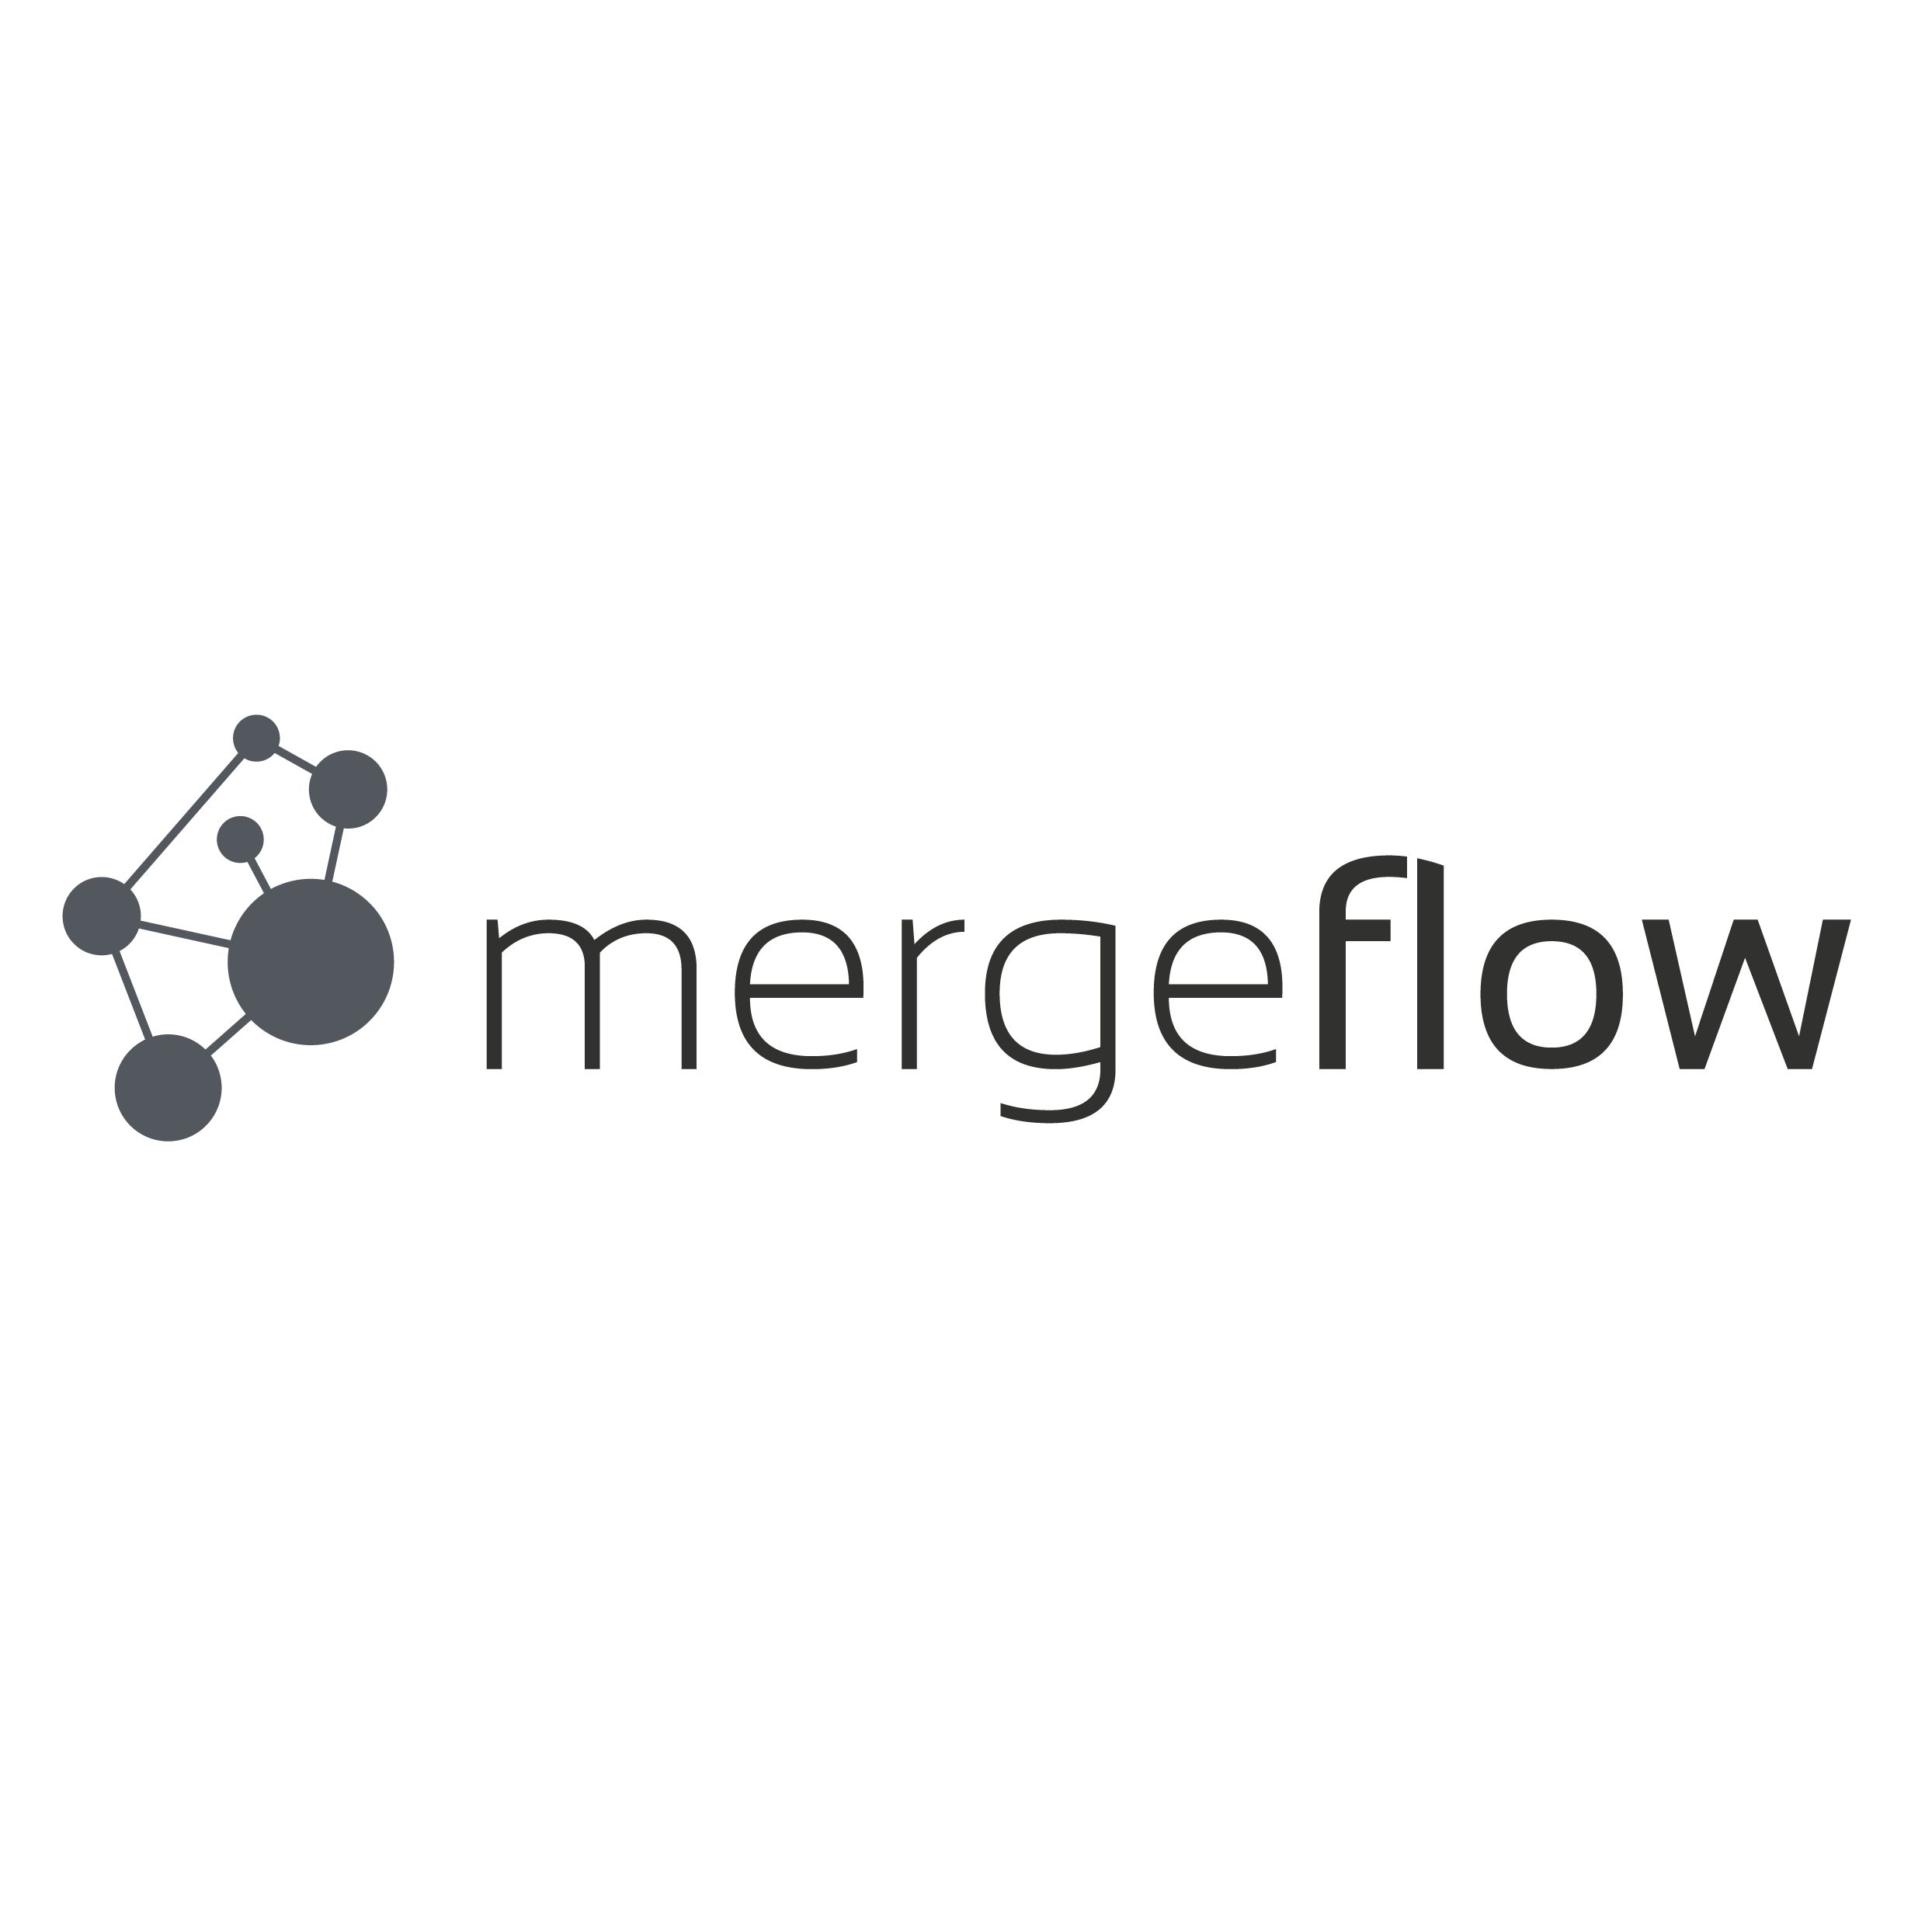 Mergeflow - Logo